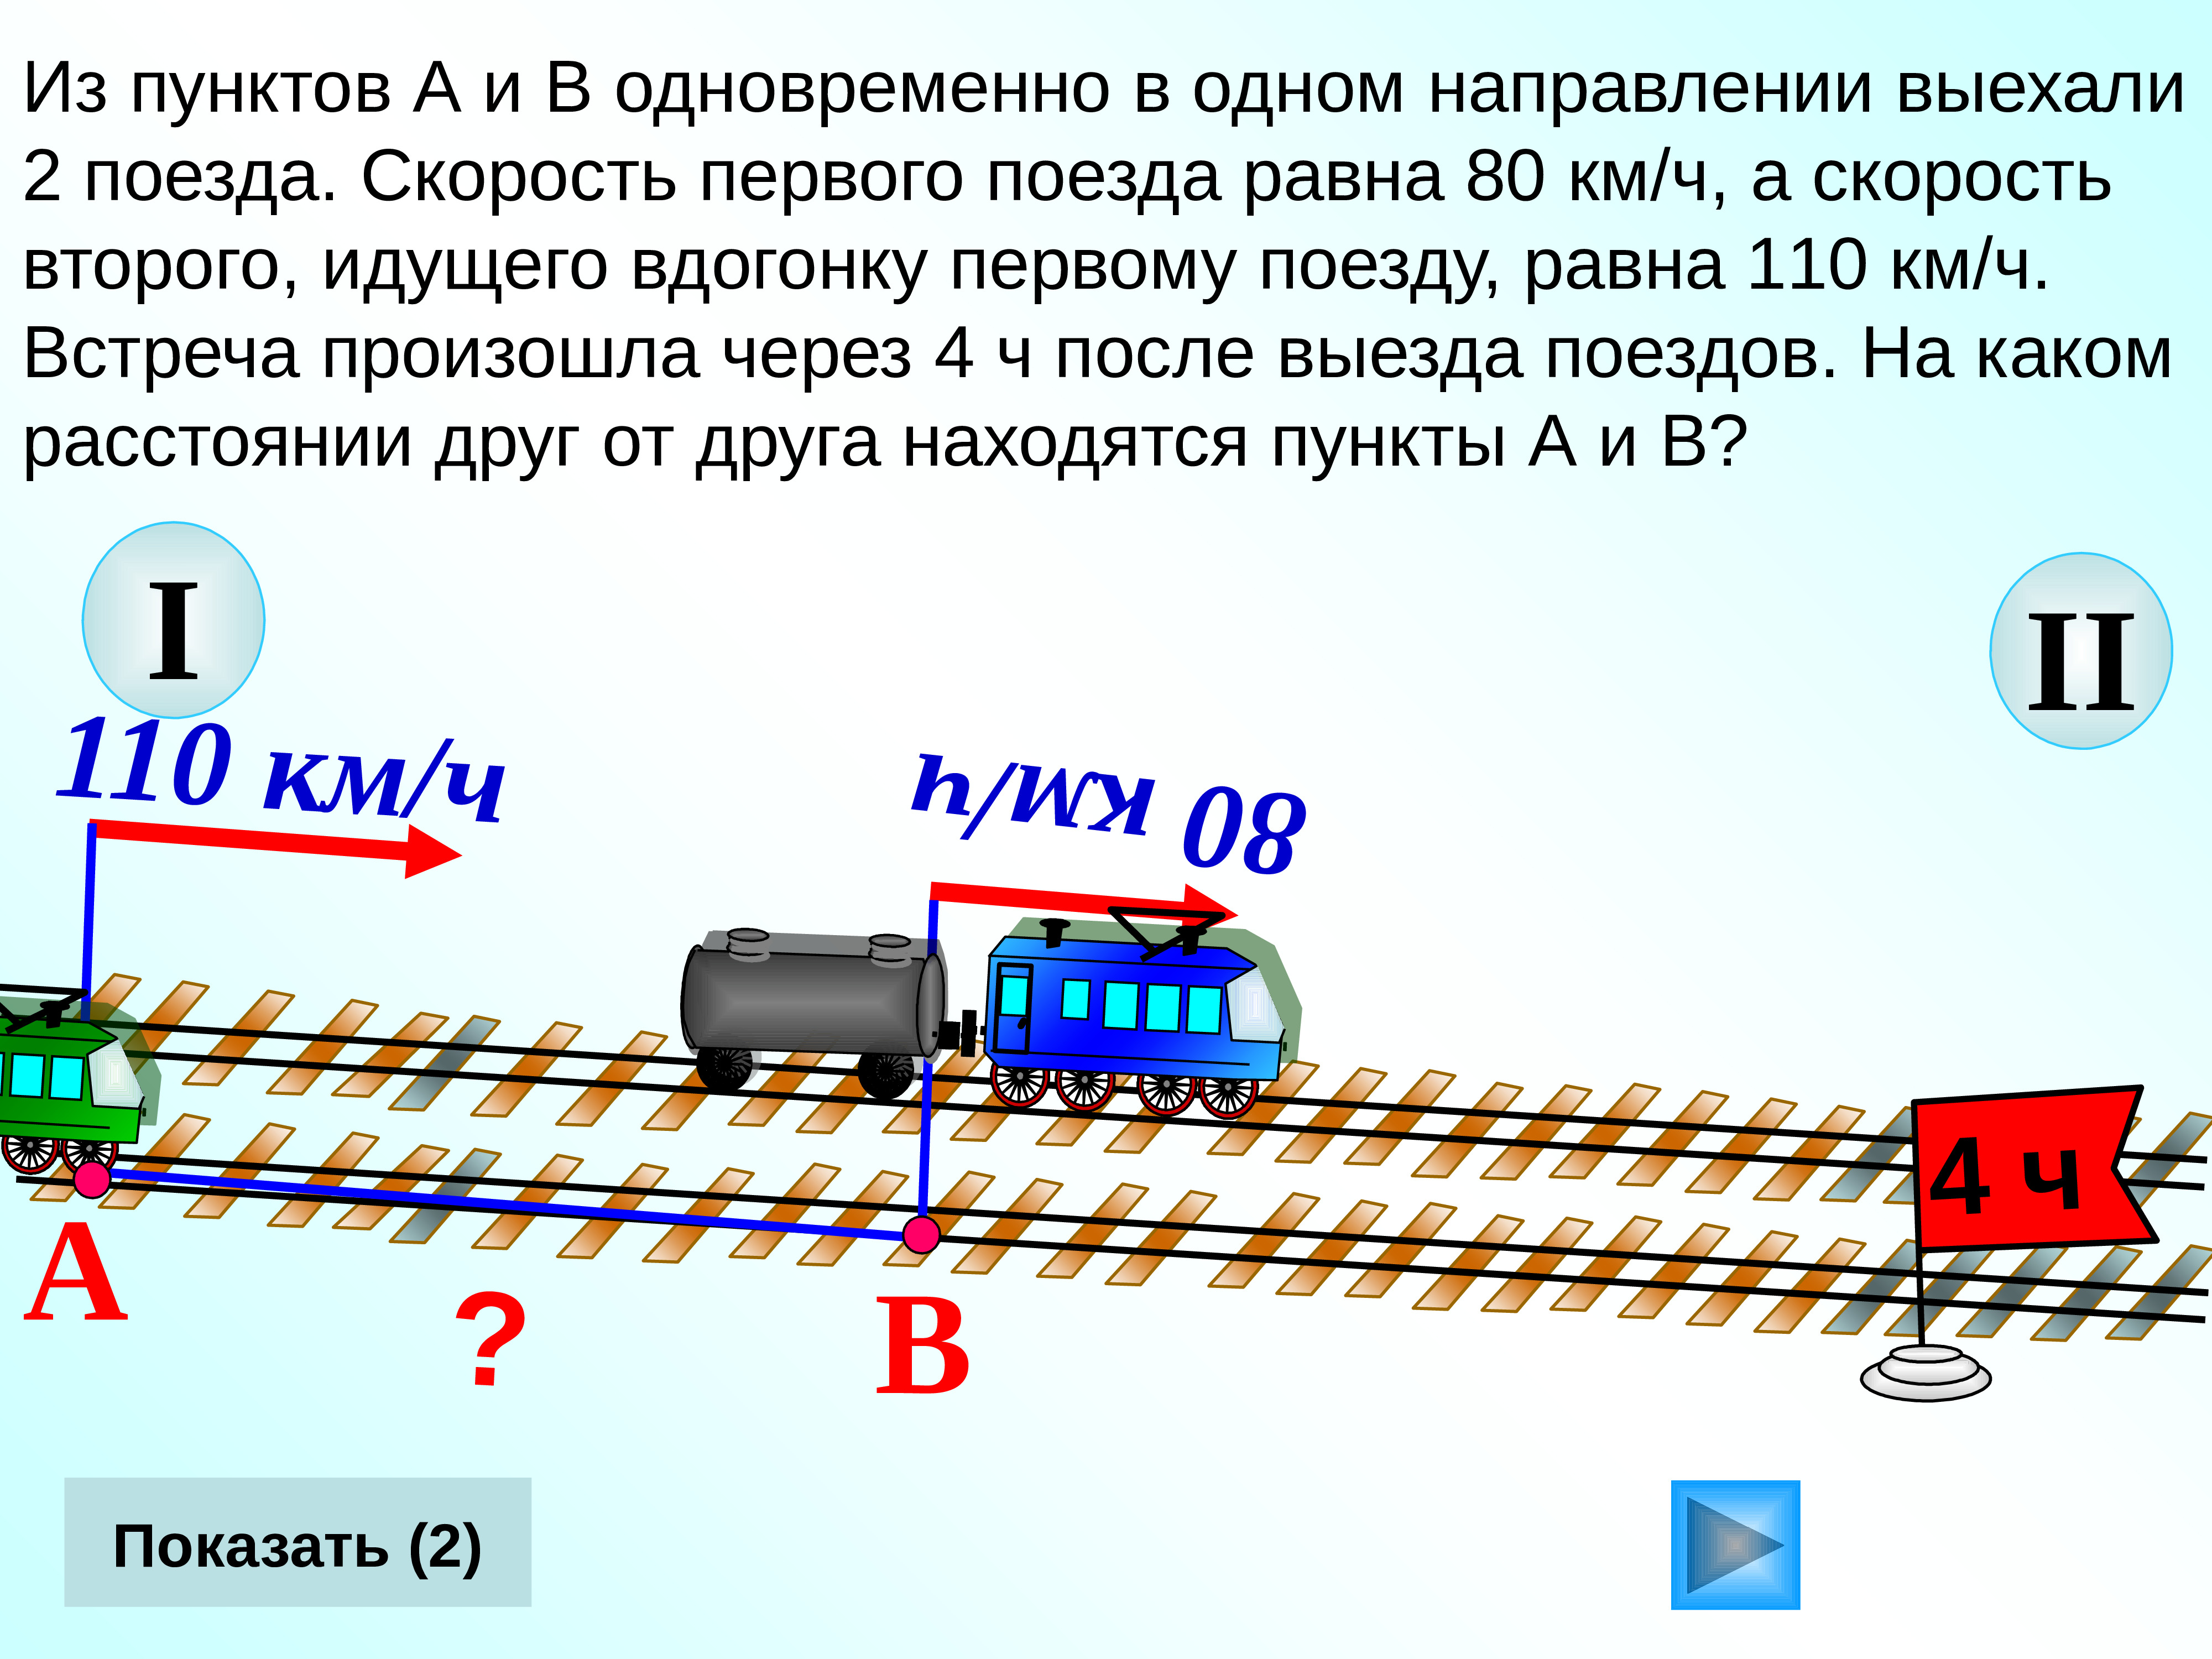 Два поезда двигаются в противоположном направлении. 2 Поезда в 1 направление. Два поезда выехали одновременно в одном направлении. В одном направлении. Из пункта а в пункт в.